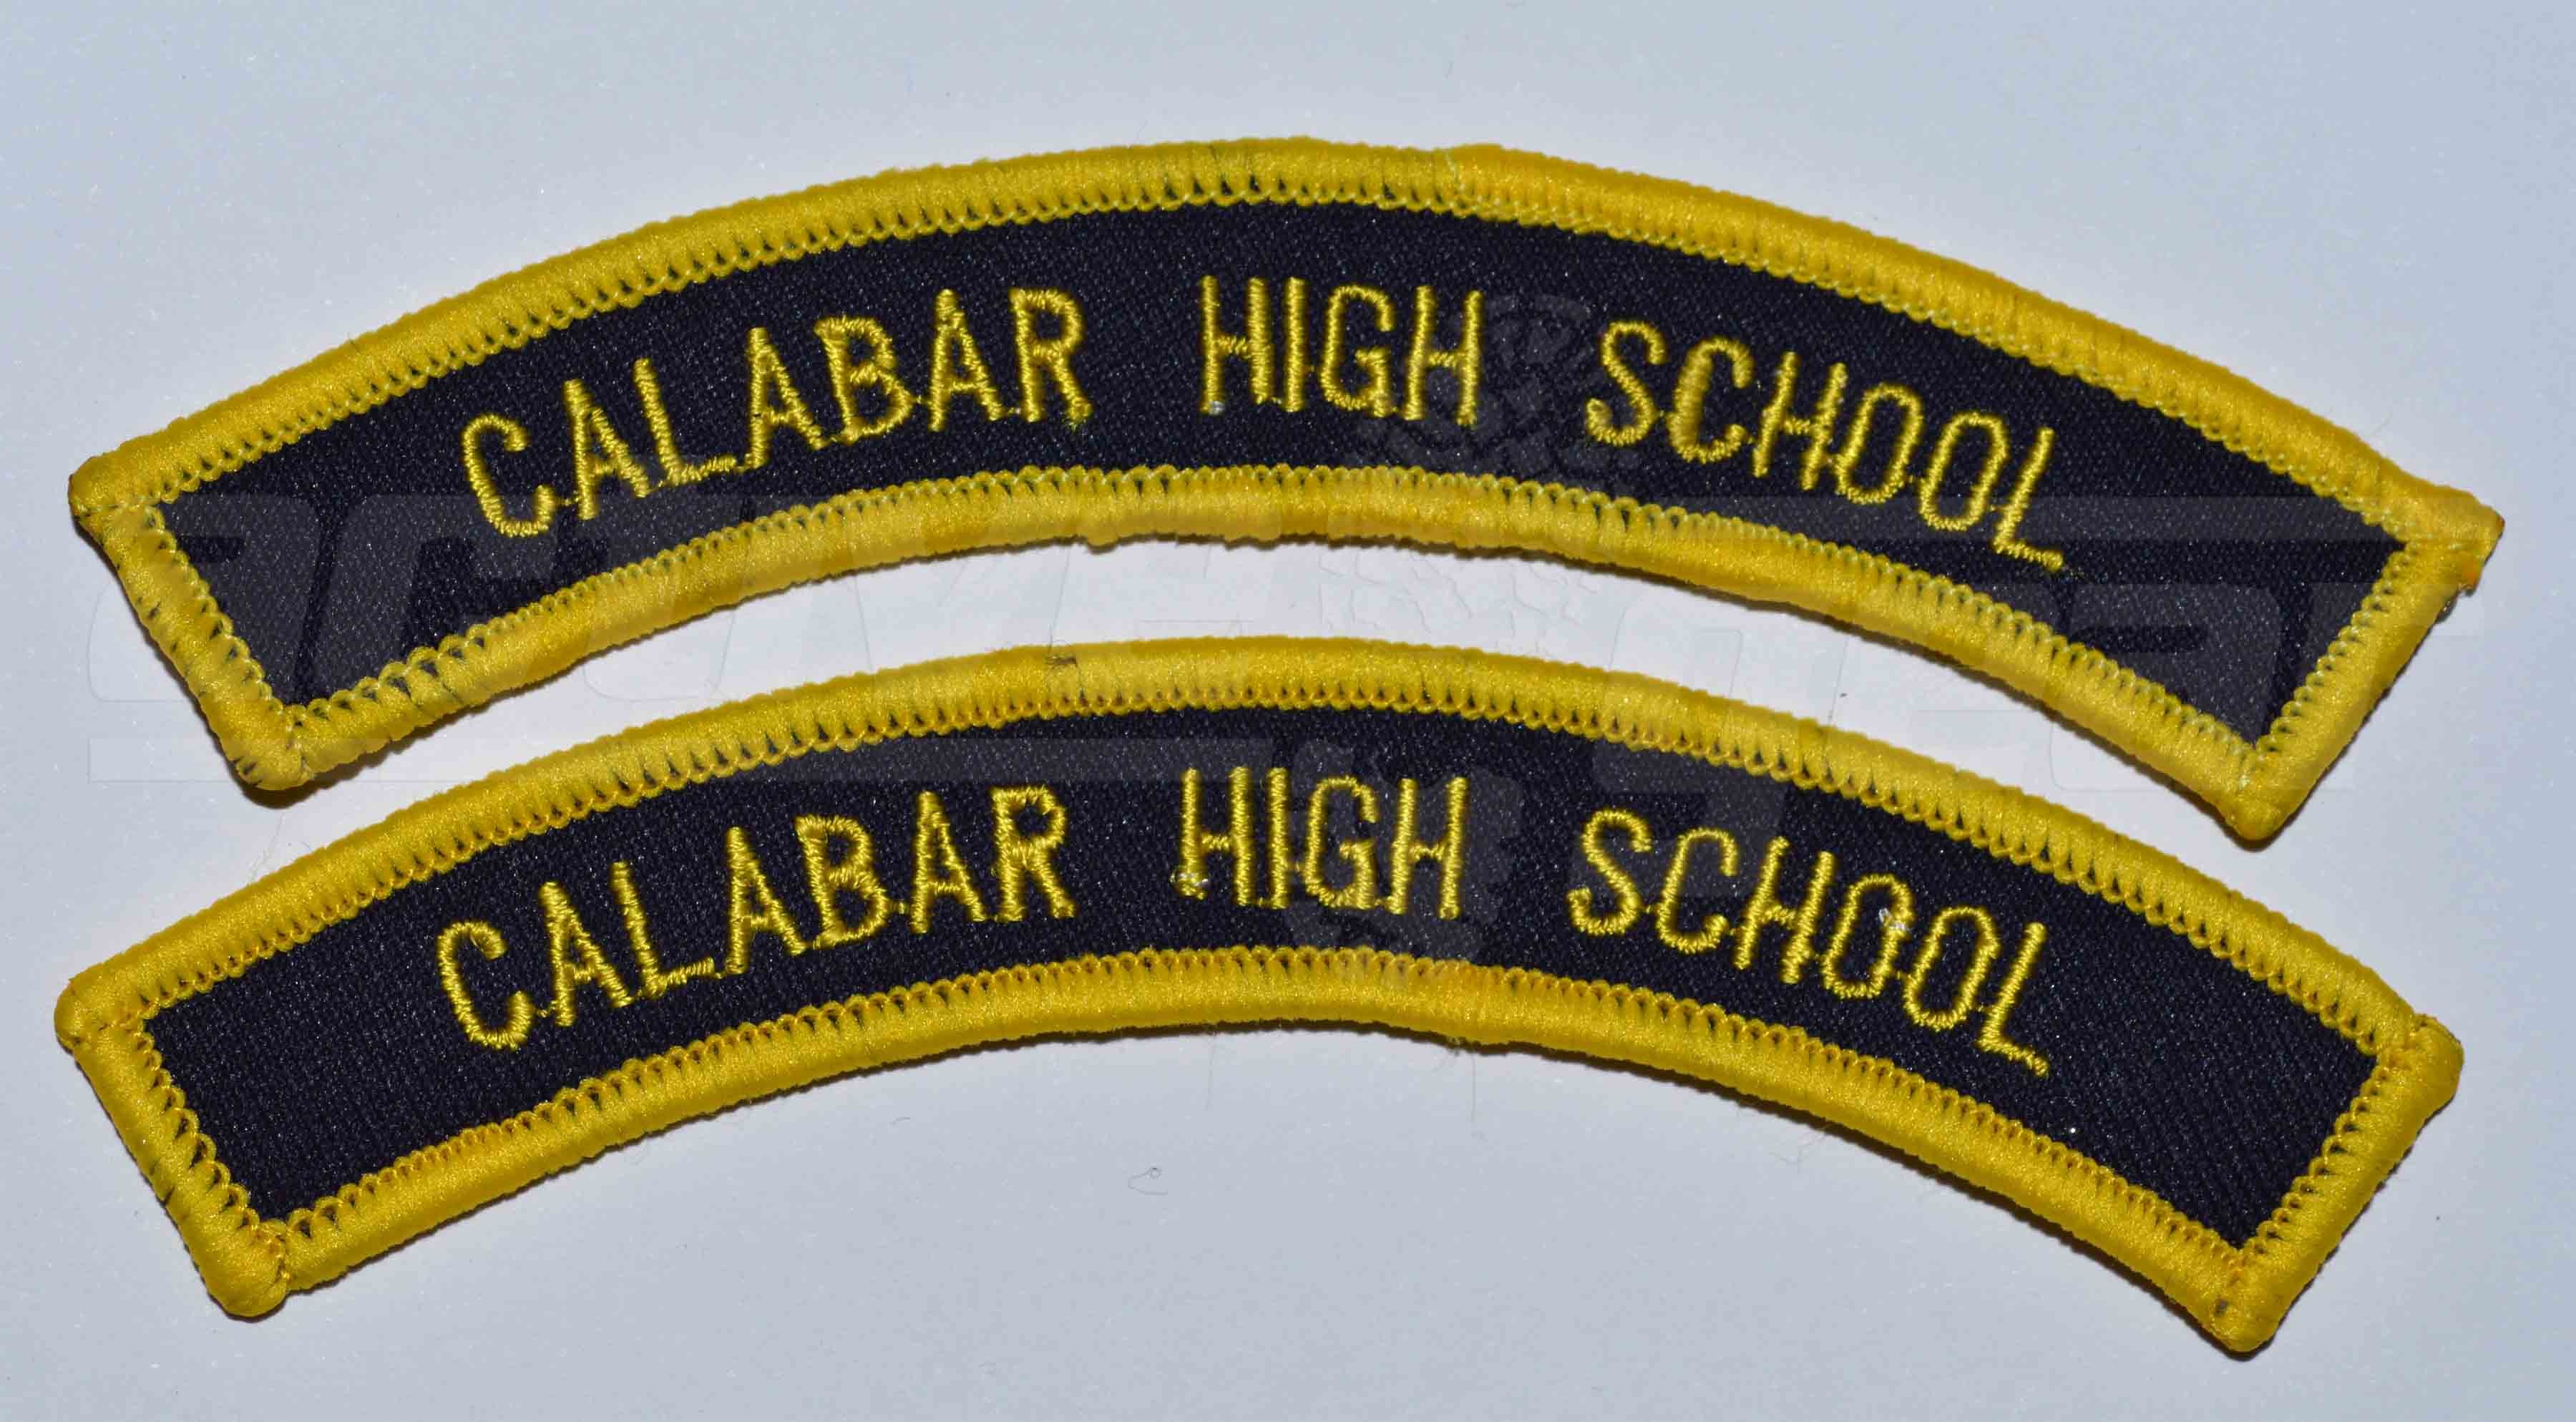 Calabar High School Unit Flash